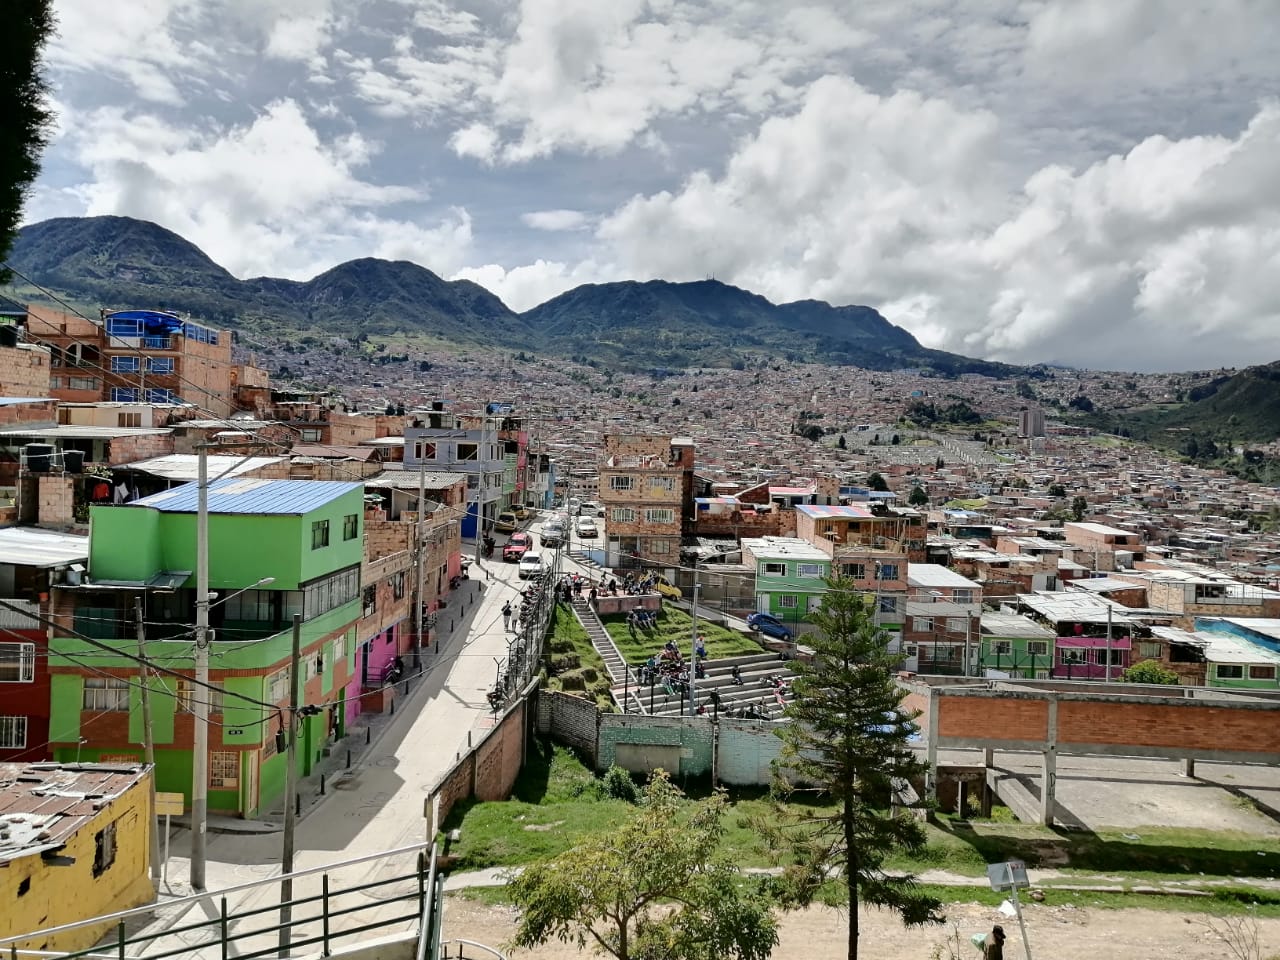 Recorrimos San Cristóbal para hablar con la ciudadanía sobre posibles intervenciones de mejoramiento de barrios